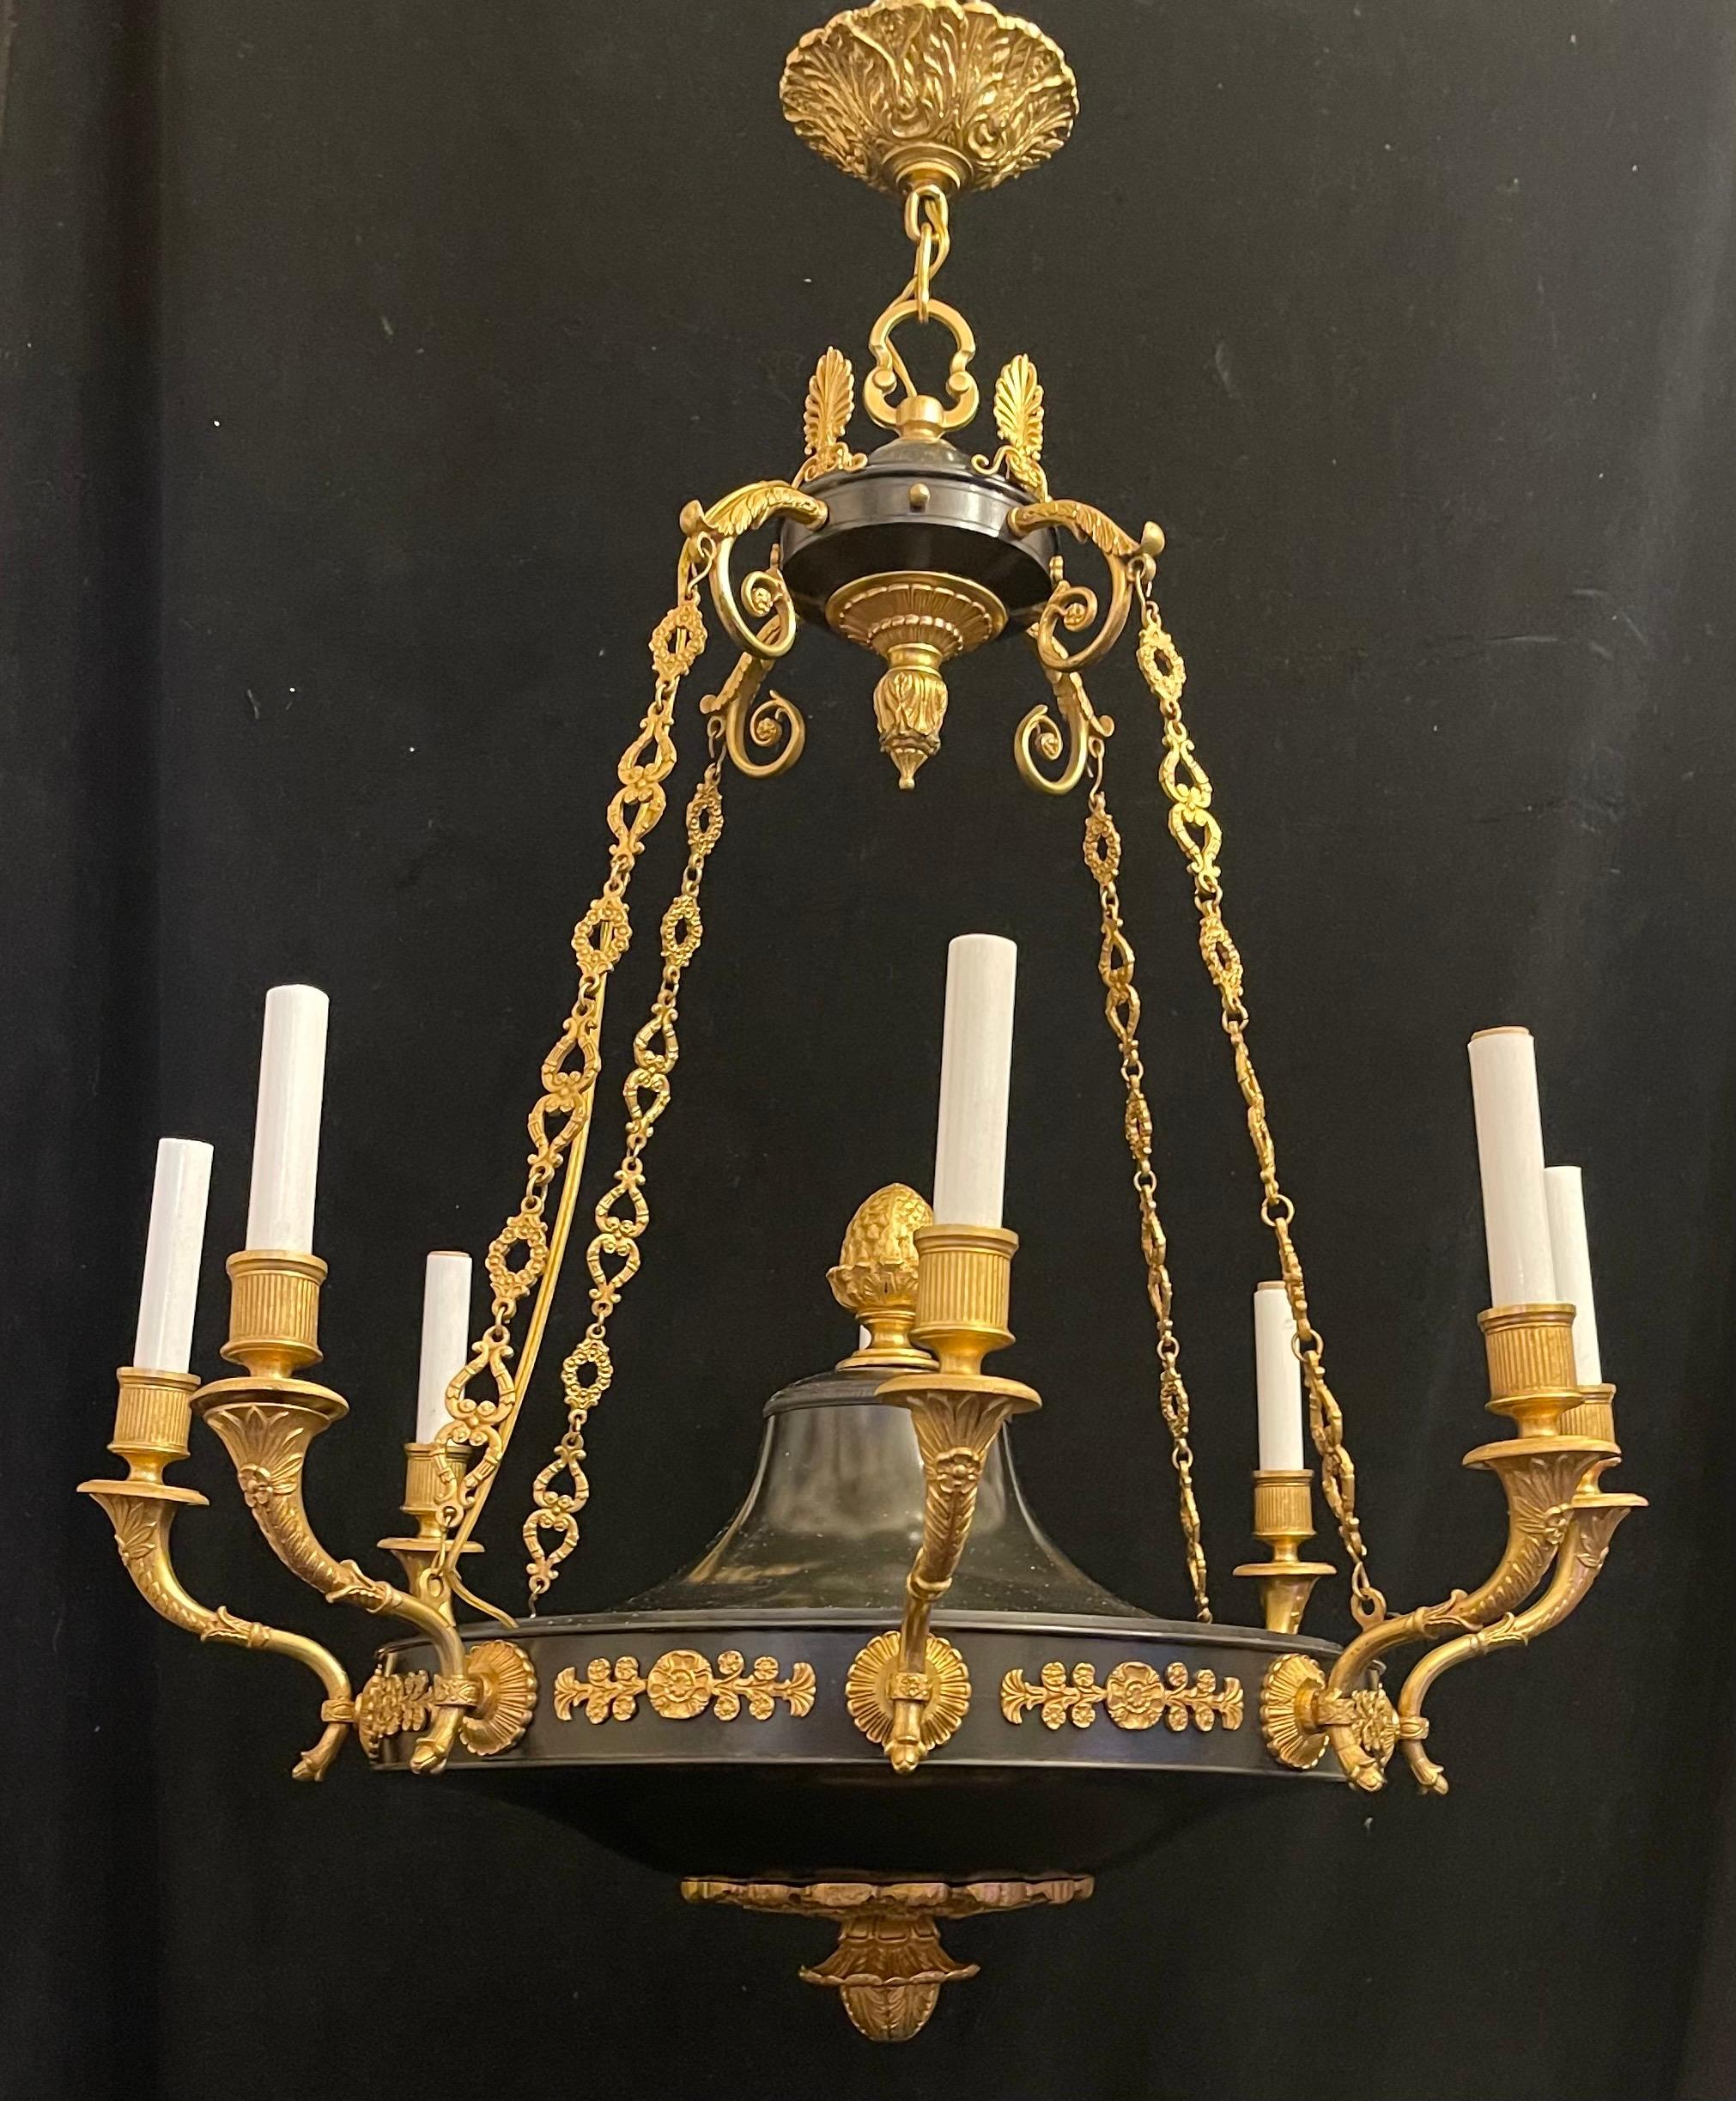 Merveilleux lustre à 8 candélabres en bronze patiné et doré de style Empire / néoclassique français